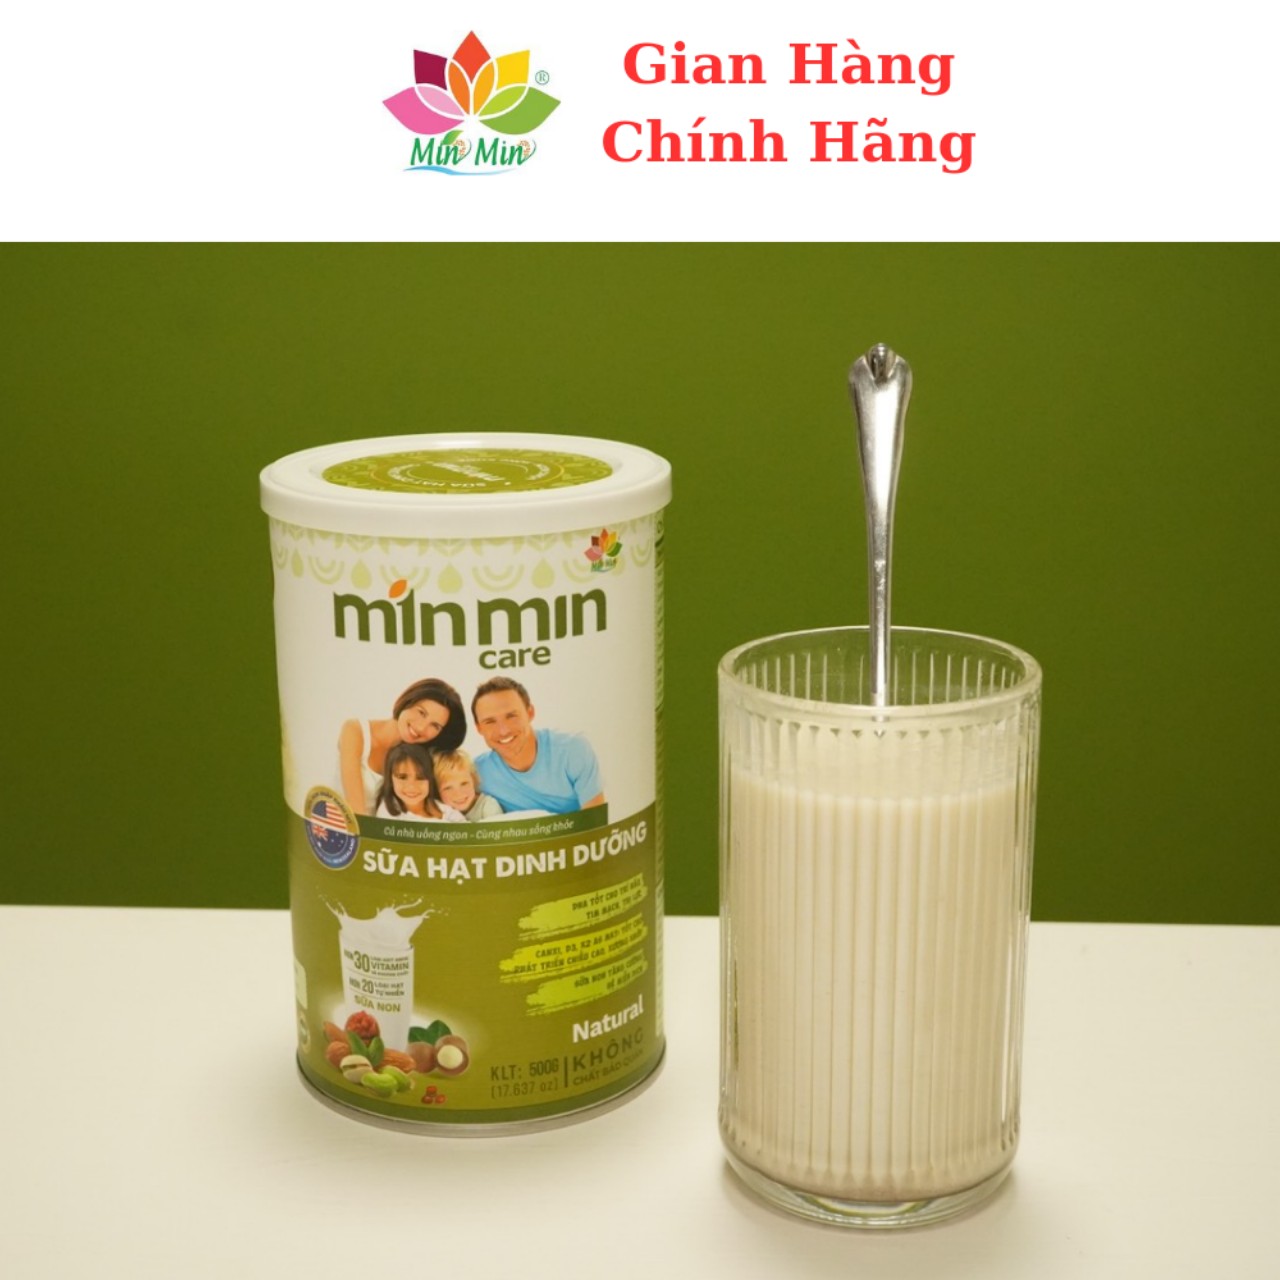 Sữa Hạt Min Min Care - Sữa Hạt Dinh Dưỡng Cho Cả Gia Đình